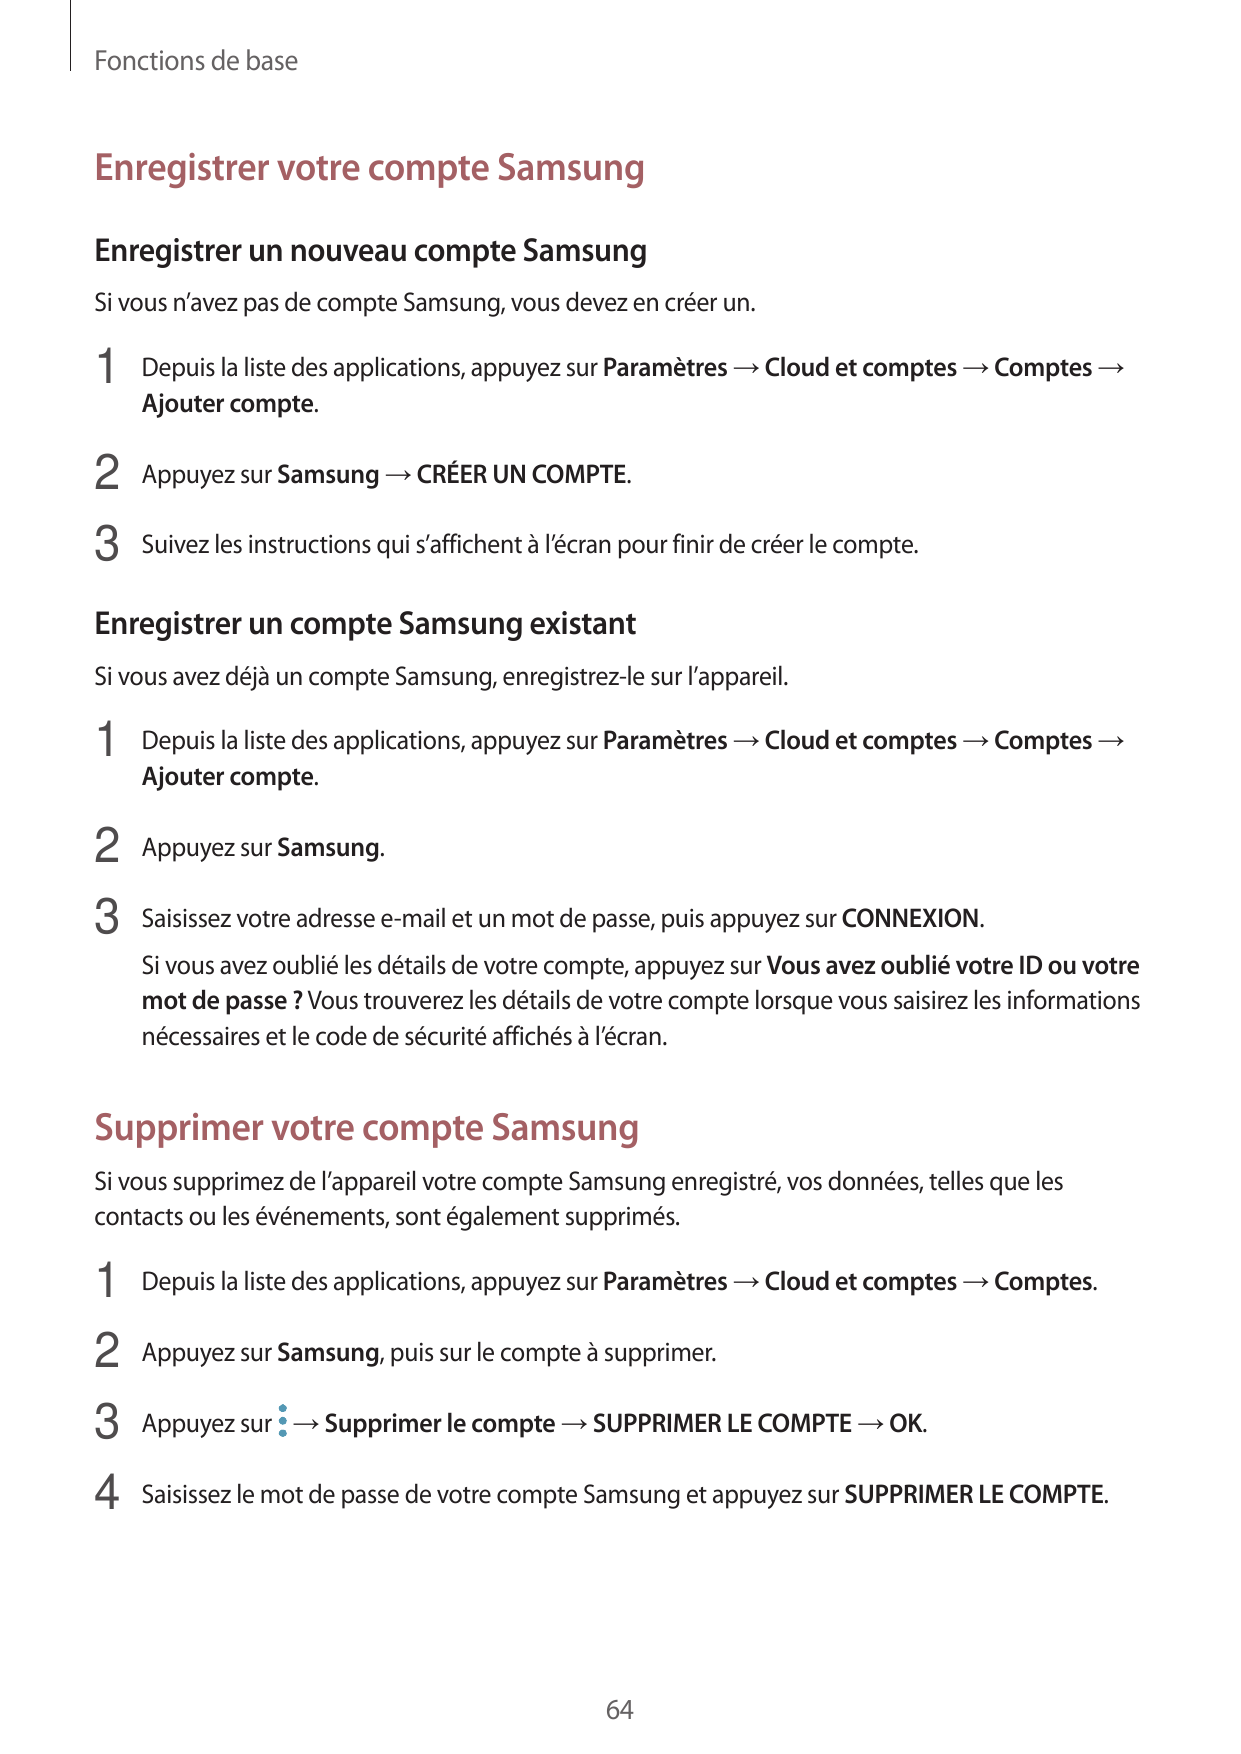 Fonctions de baseEnregistrer votre compte SamsungEnregistrer un nouveau compte SamsungSi vous n’avez pas de compte Samsung, vous